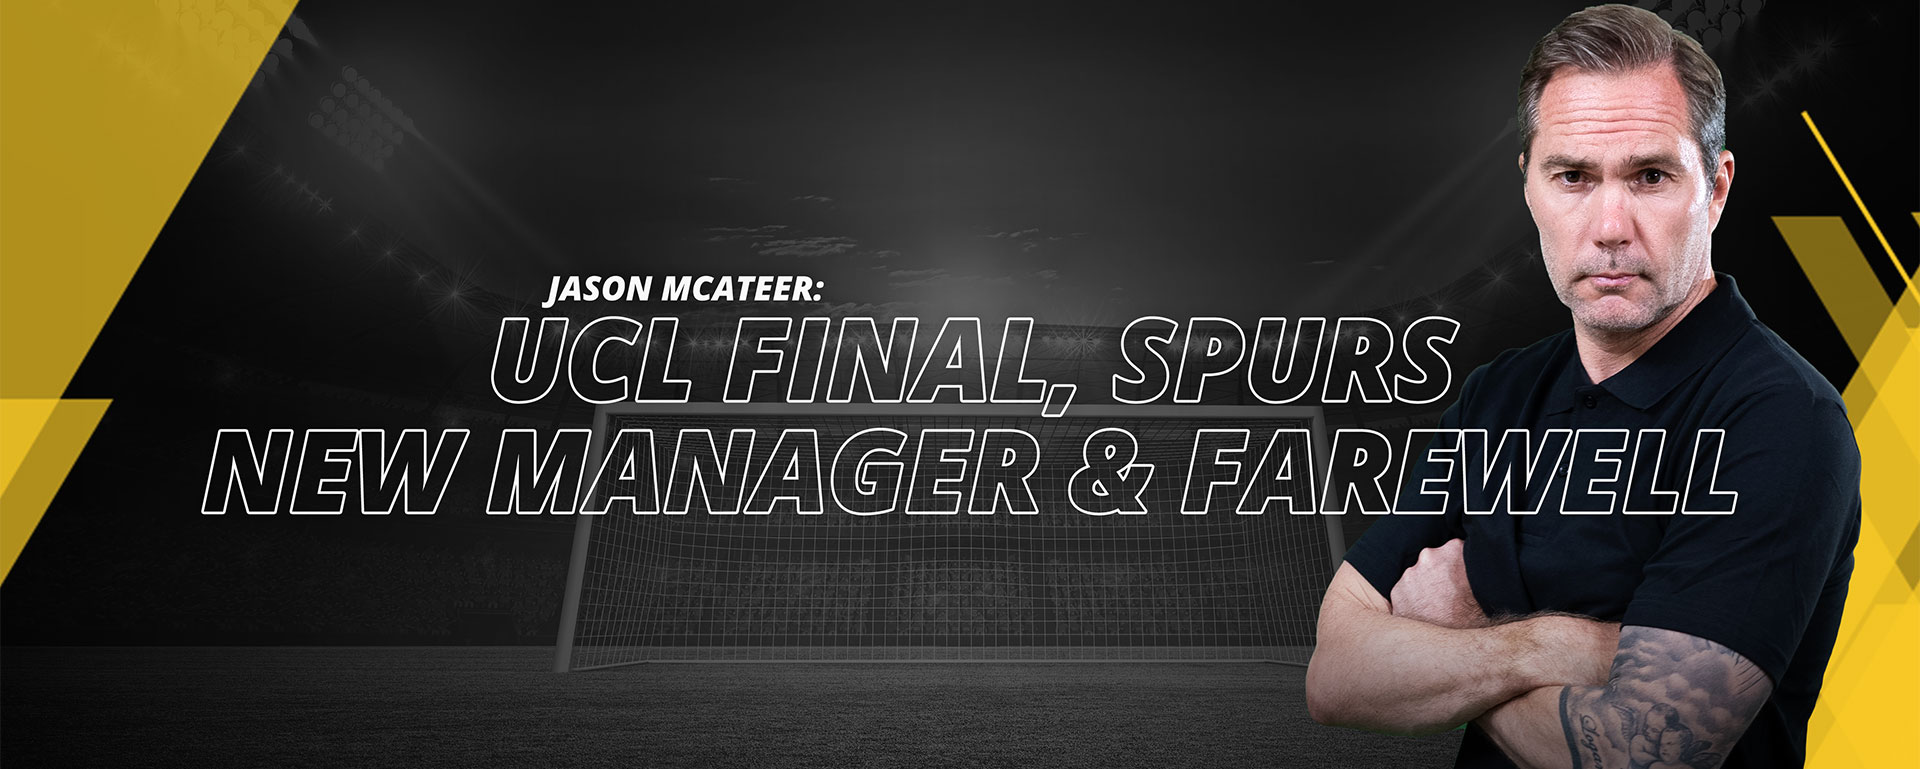 JASON MCATEER – UCL FINAL, SPURS NEW MANAGER & FAREWELL